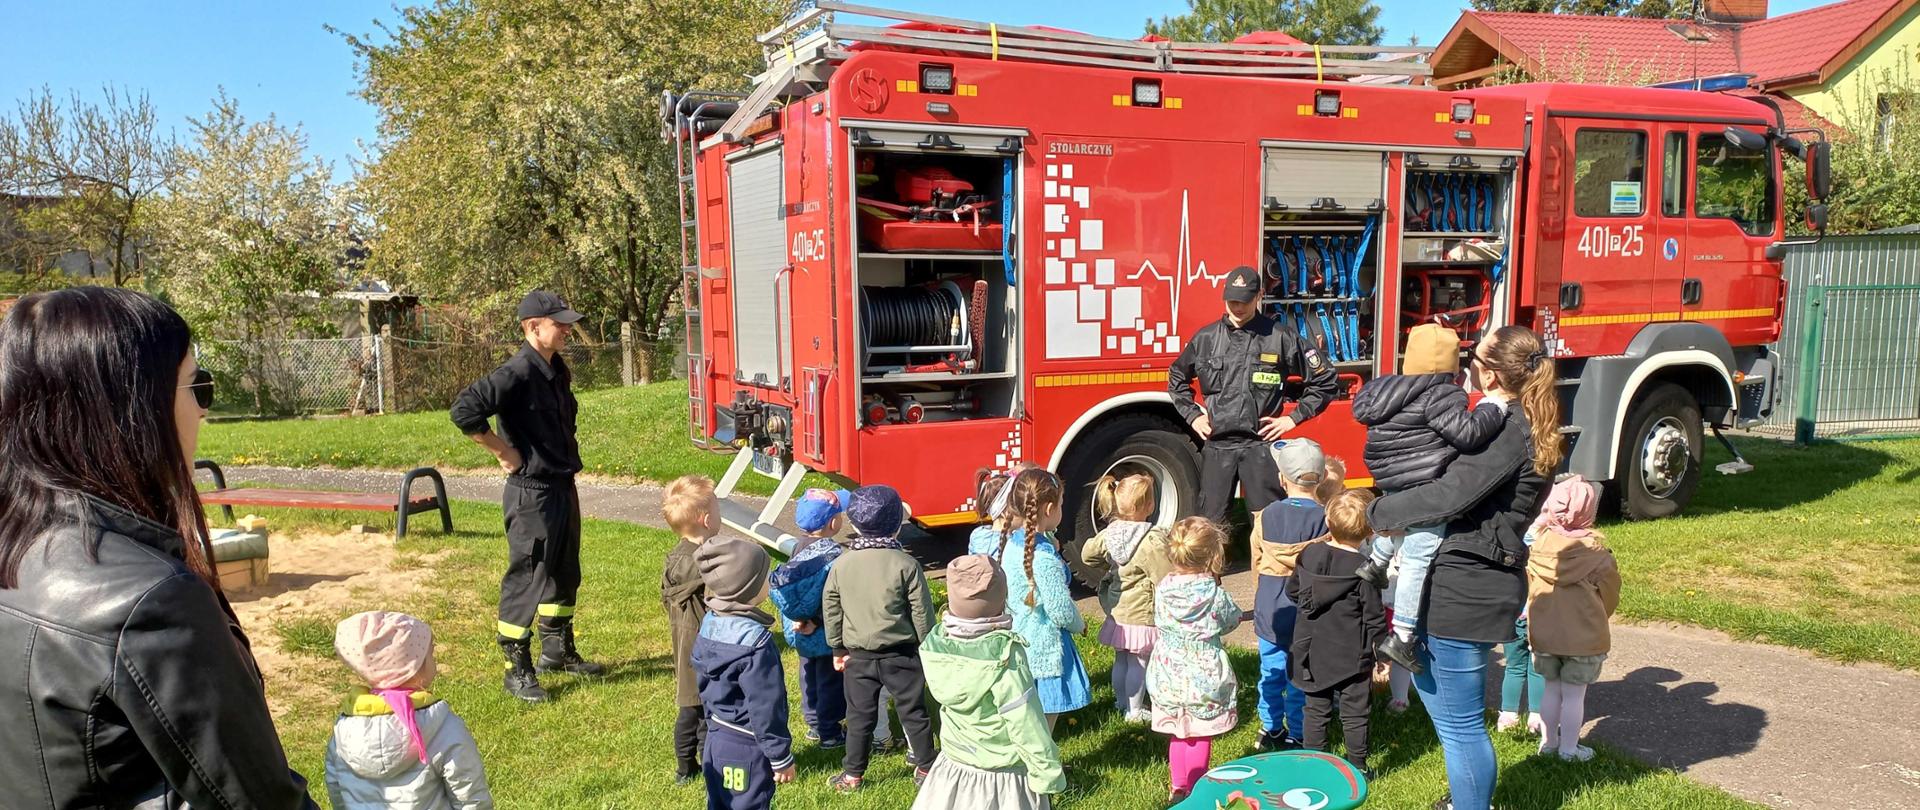 Zdjęcie przedstawia strażaków oraz sprzęt i pojazdy strażackie podczas edukacji dzieci i młodzieży.
W tle budynek drzewa.
